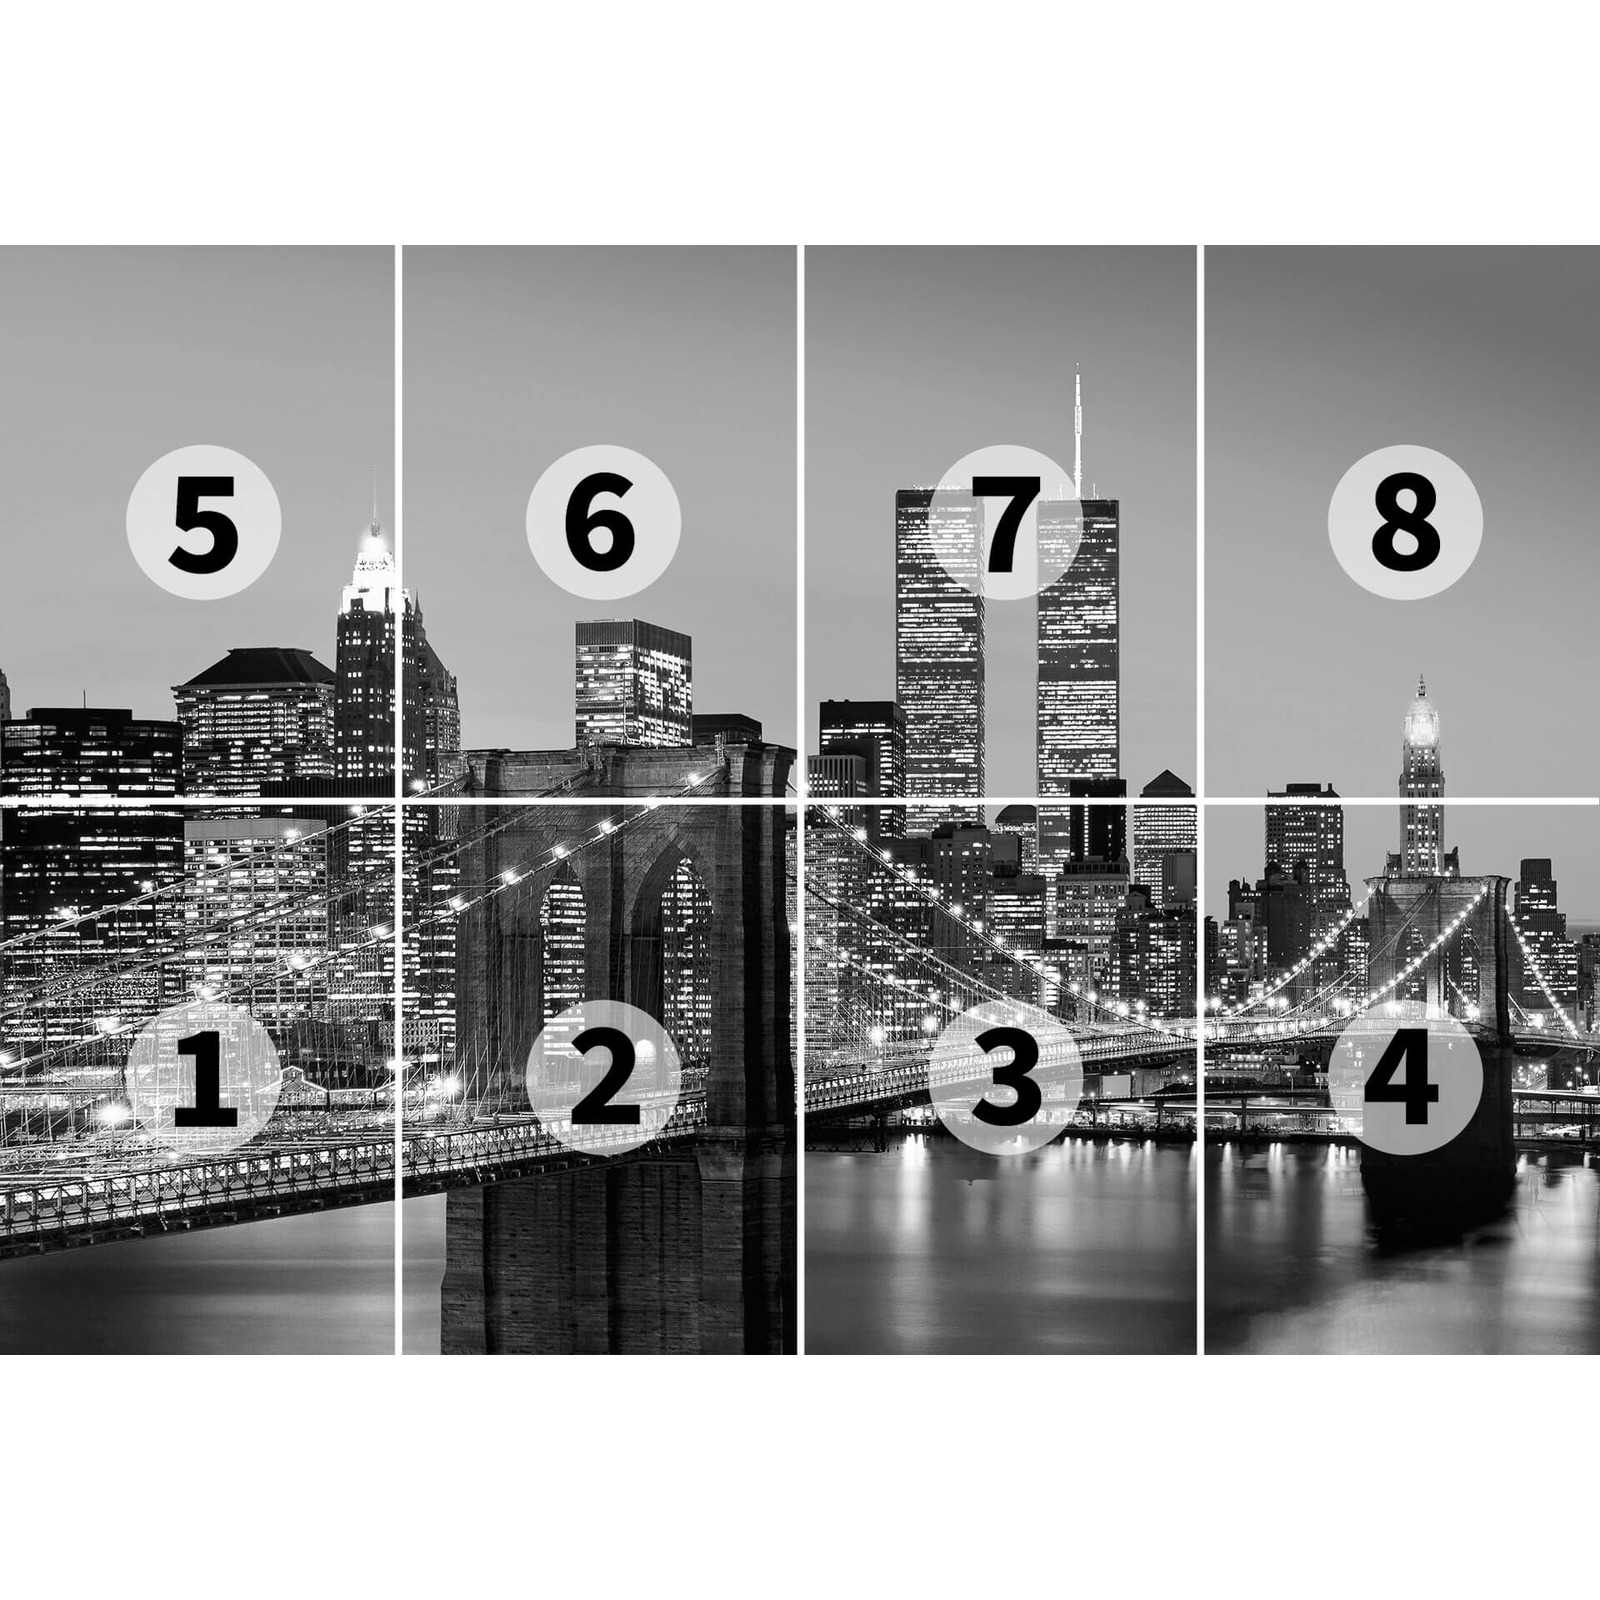             Papel Pintado Retro Manhattan Skyline en blanco y negro
        